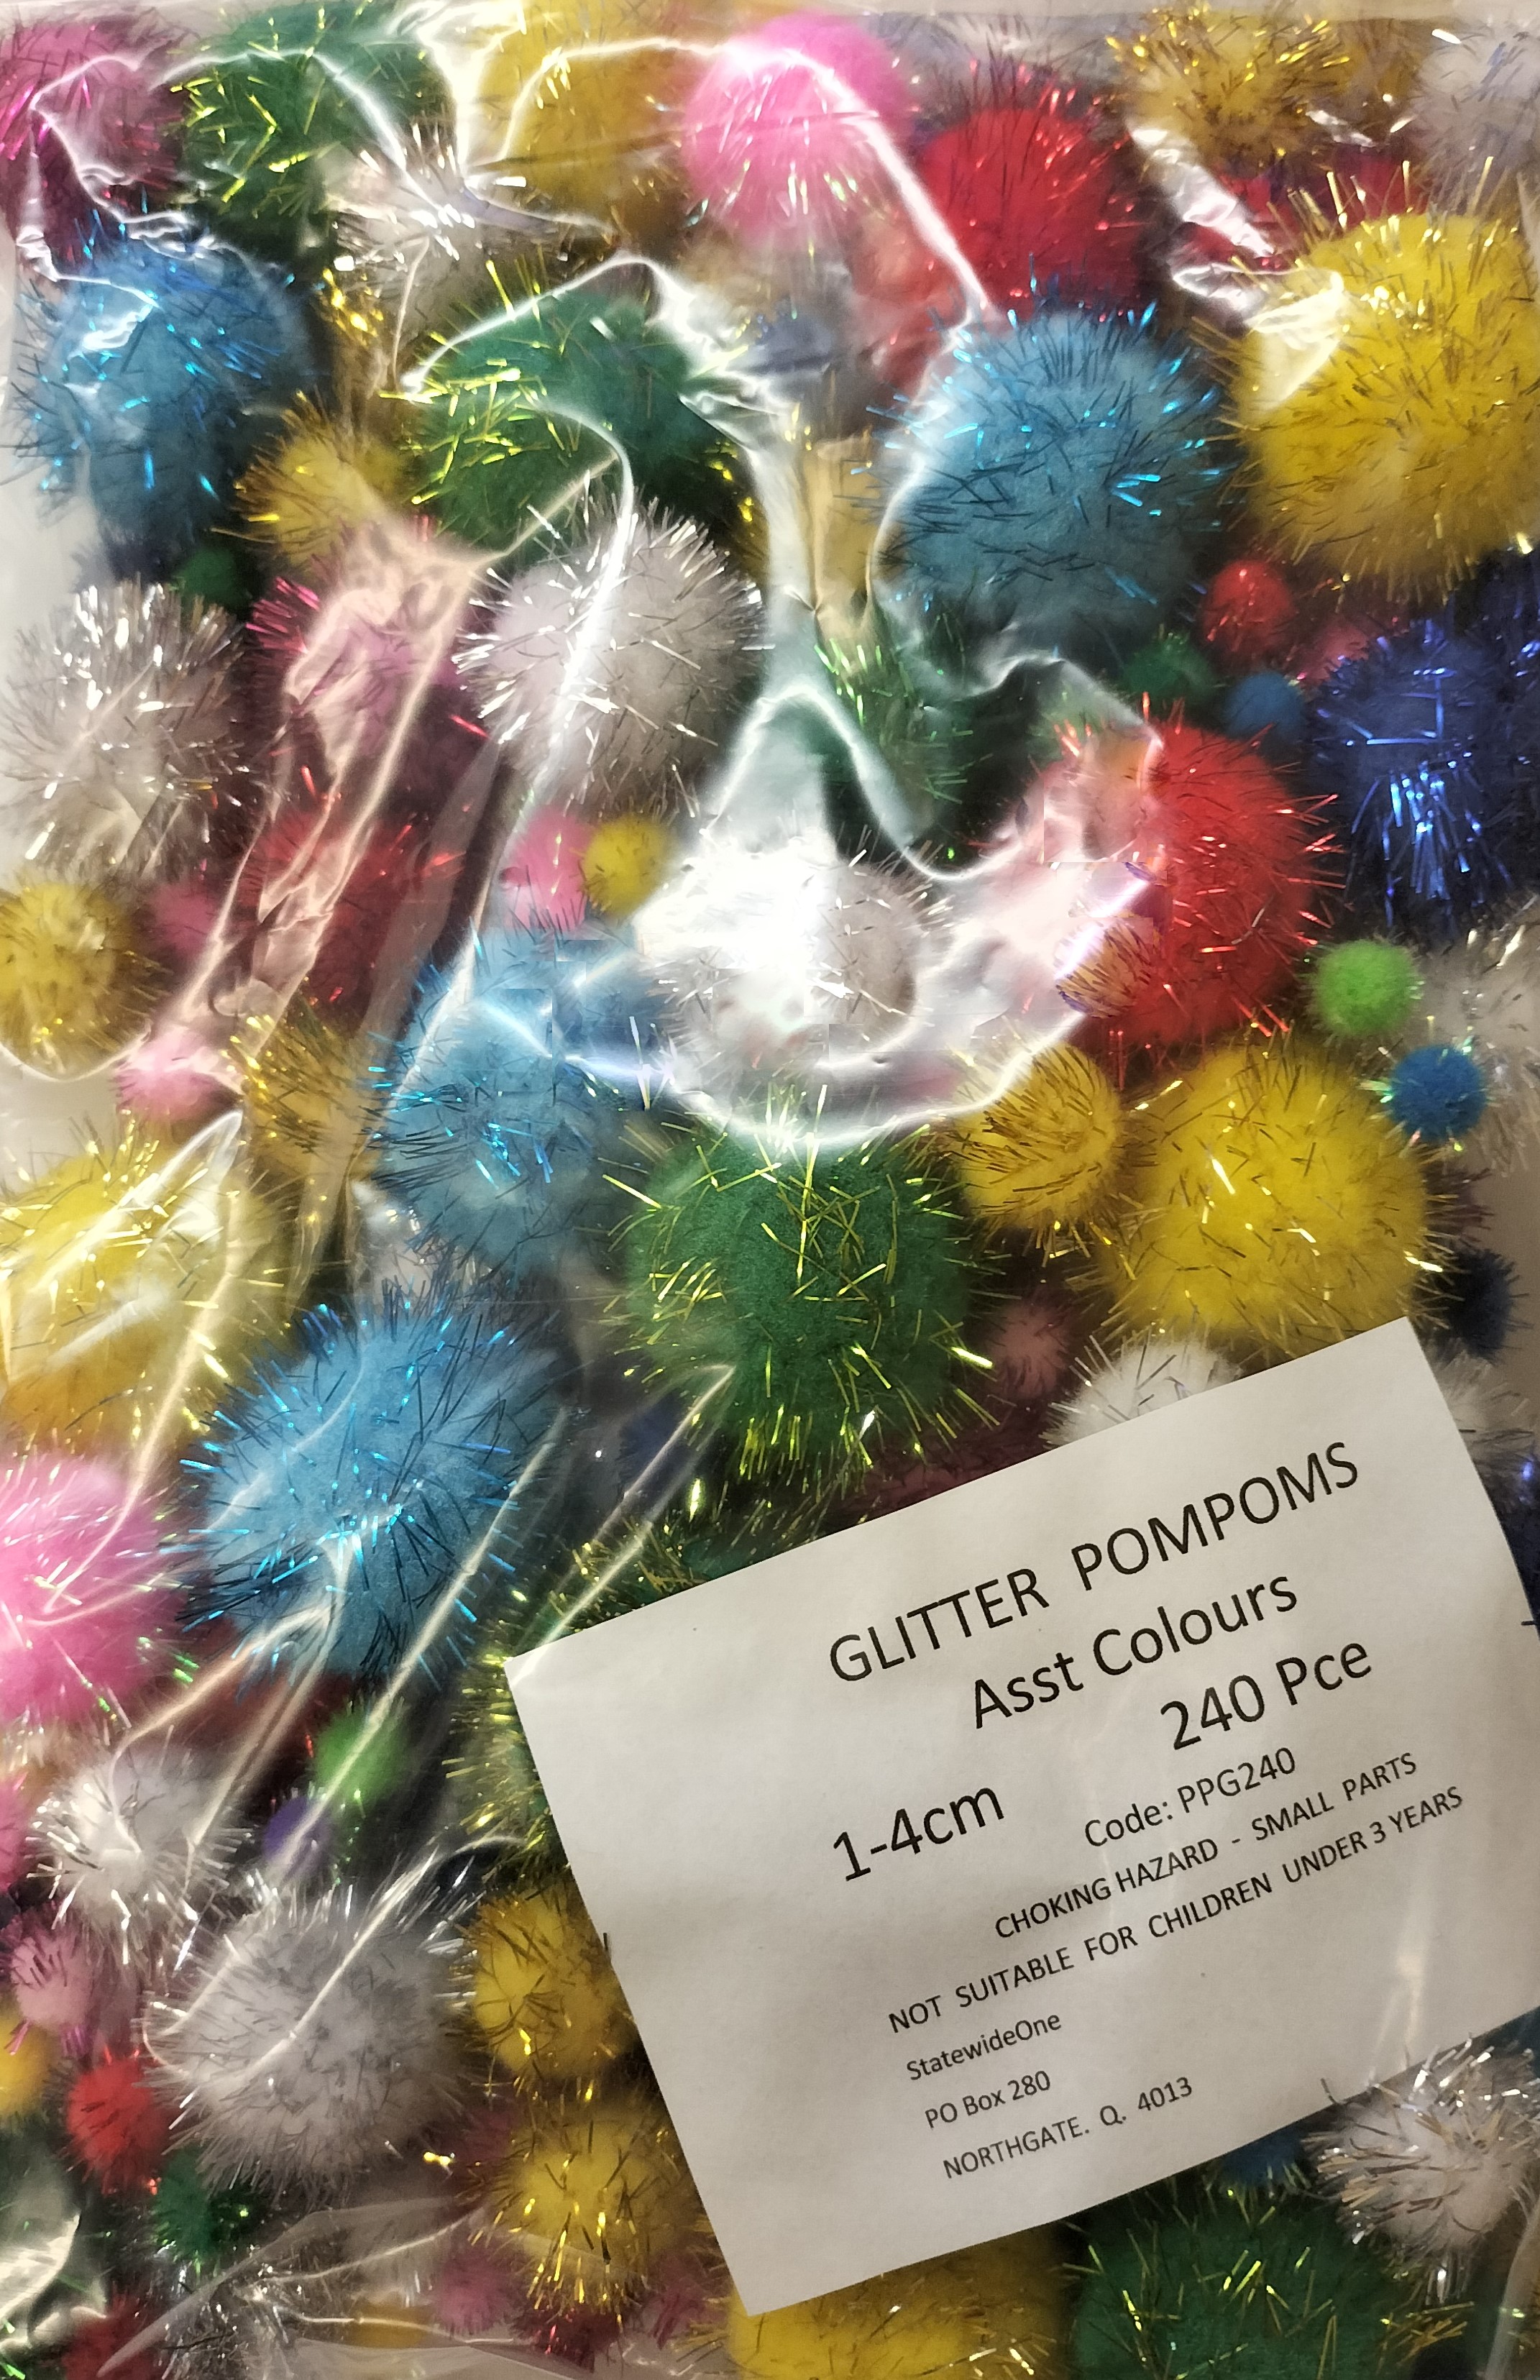 Glitter PomPoms 10-40mm Asst Colours Pk 240